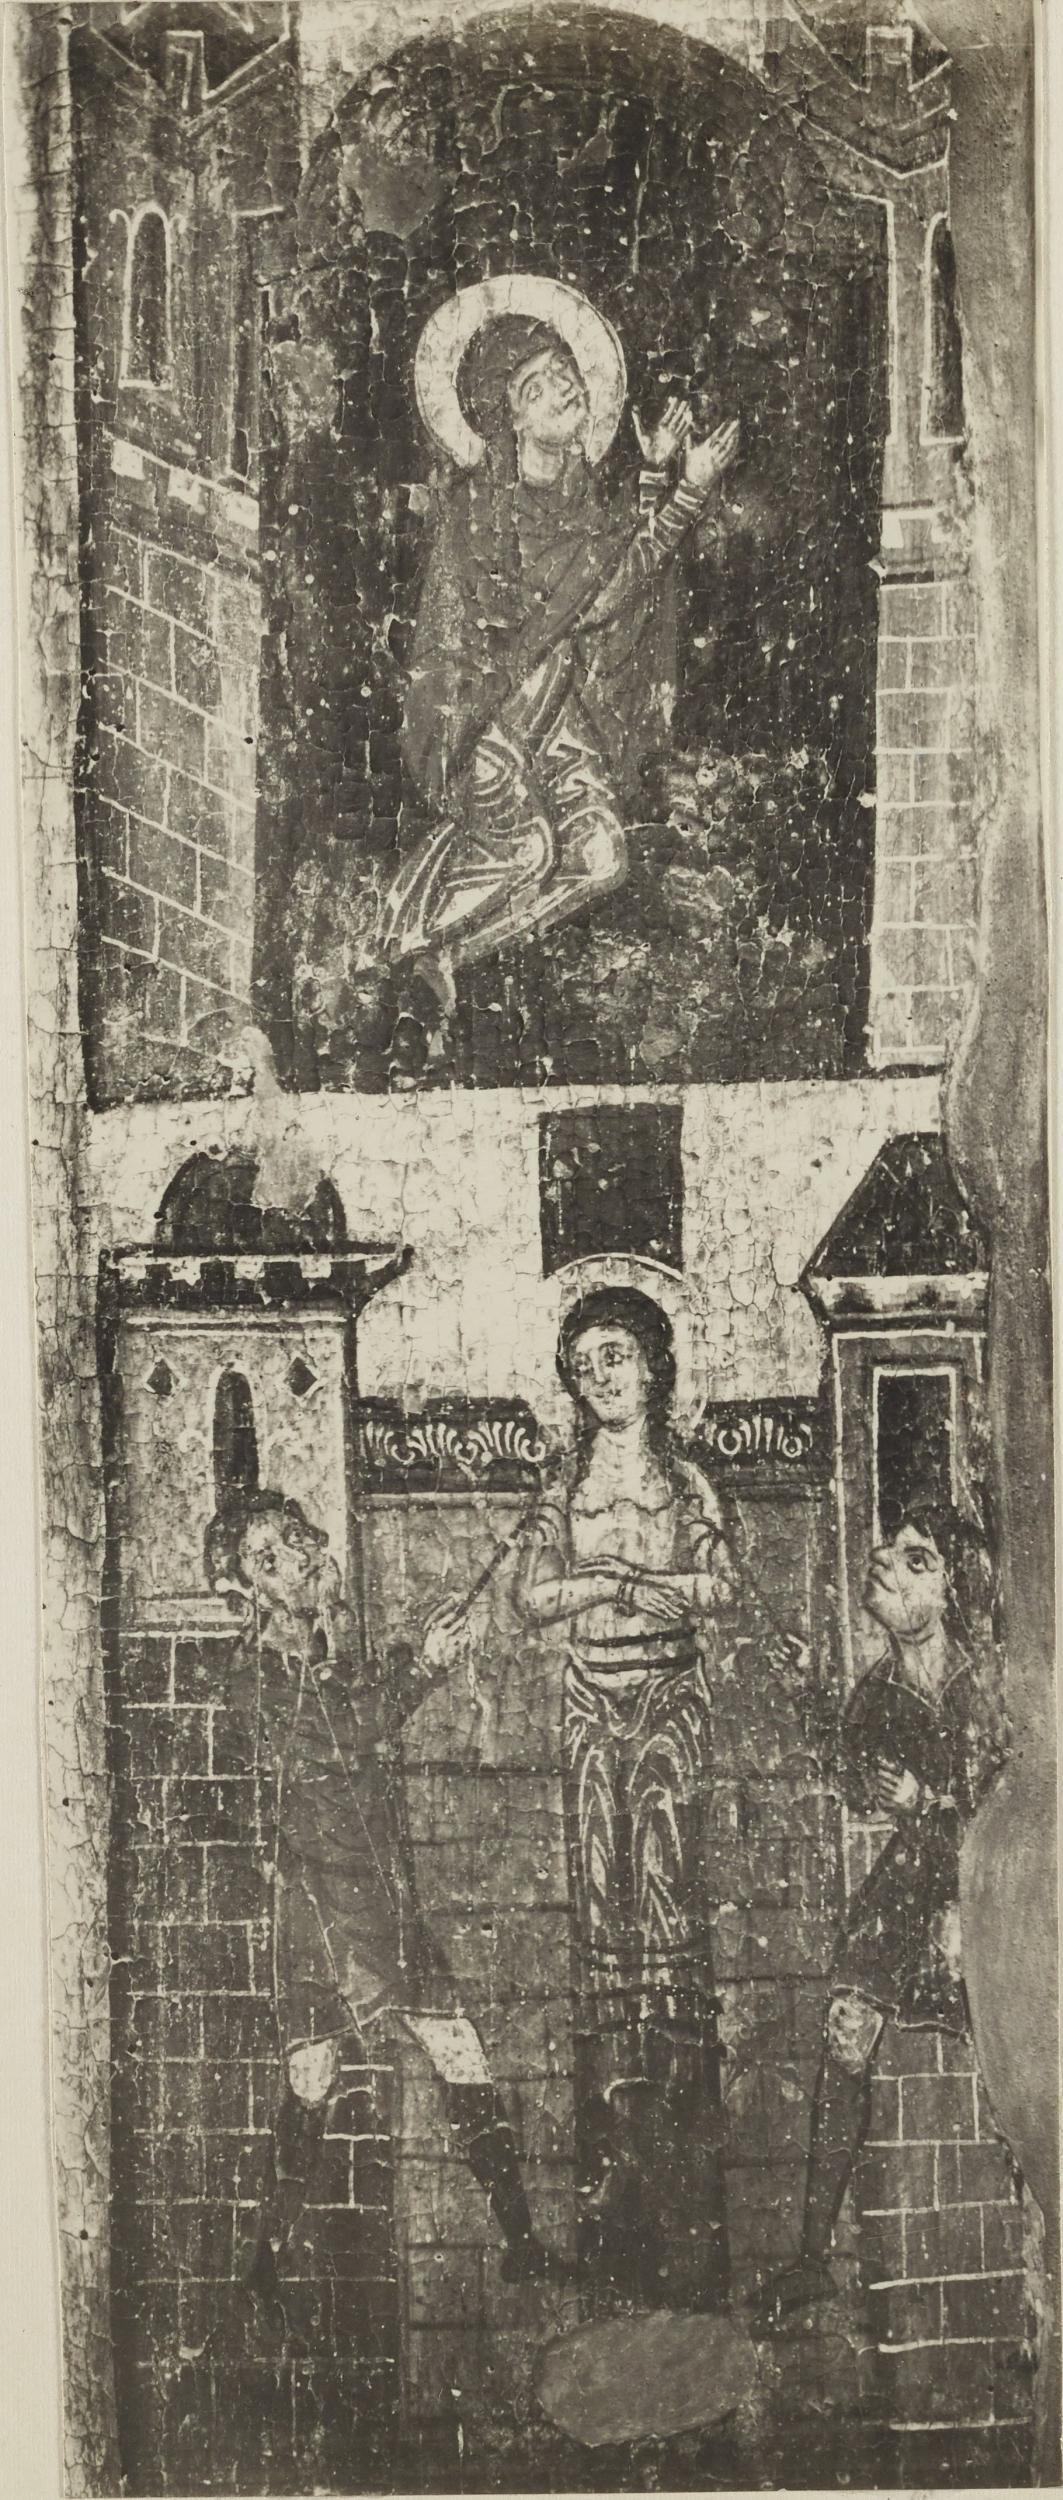 De Gregorio, Bisceglie - Chiesa di S. margherita, dittico dei SS. Nicola e Margherita - particolare, 1901-1910, gelatina ai sali d'argento/carta, MPI137791